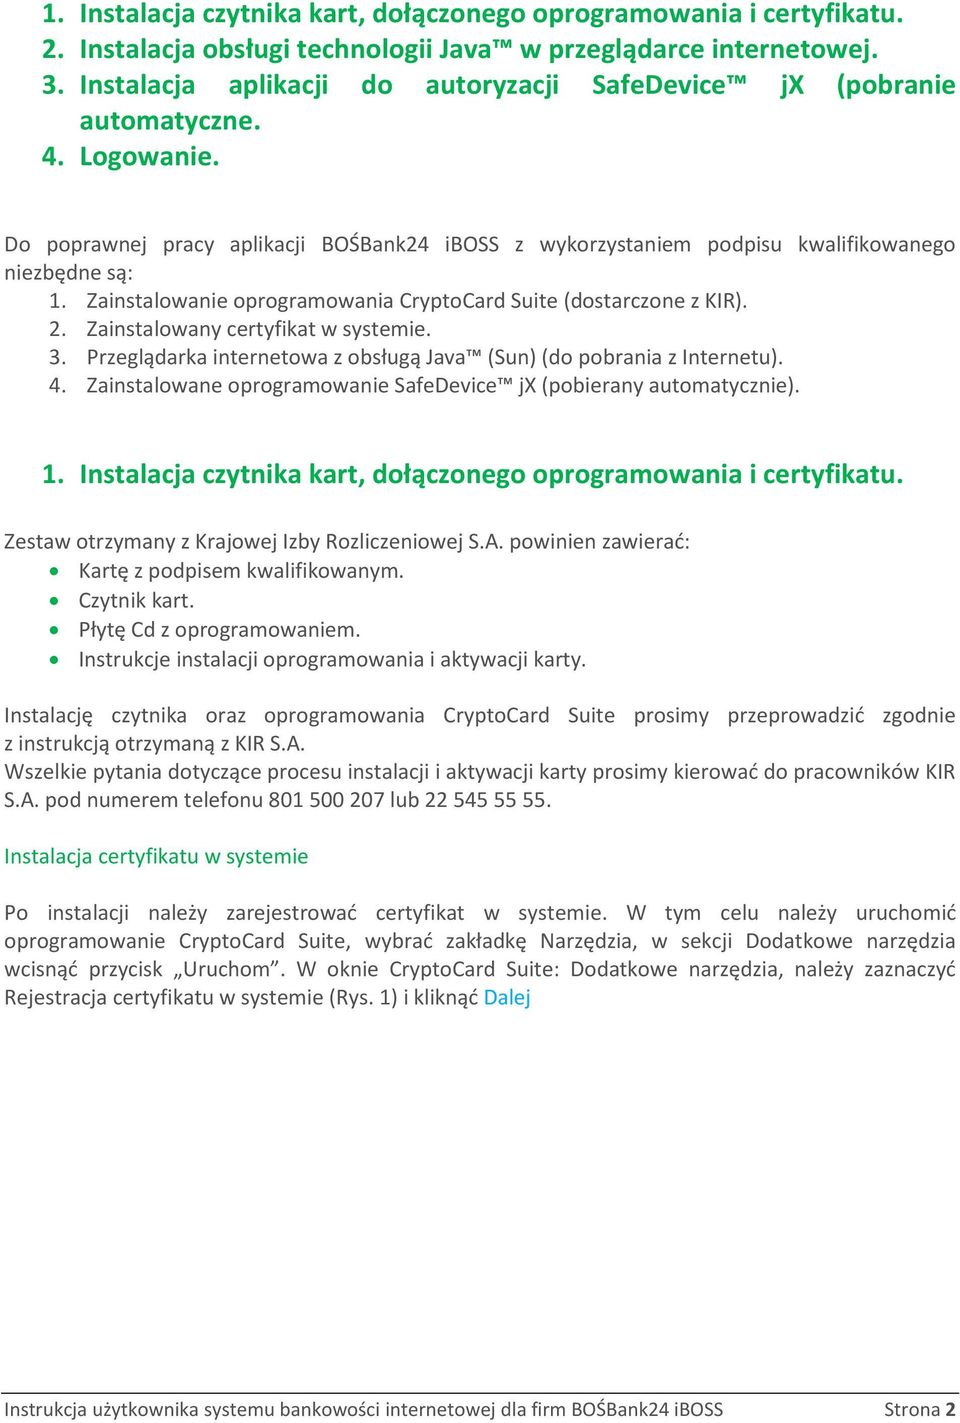 Zainstalowanie oprogramowania CryptoCard Suite (dostarczone z KIR). 2. Zainstalowany certyfikat w systemie. 3. Przeglądarka internetowa z obsługą Java (Sun) (do pobrania z Internetu). 4.